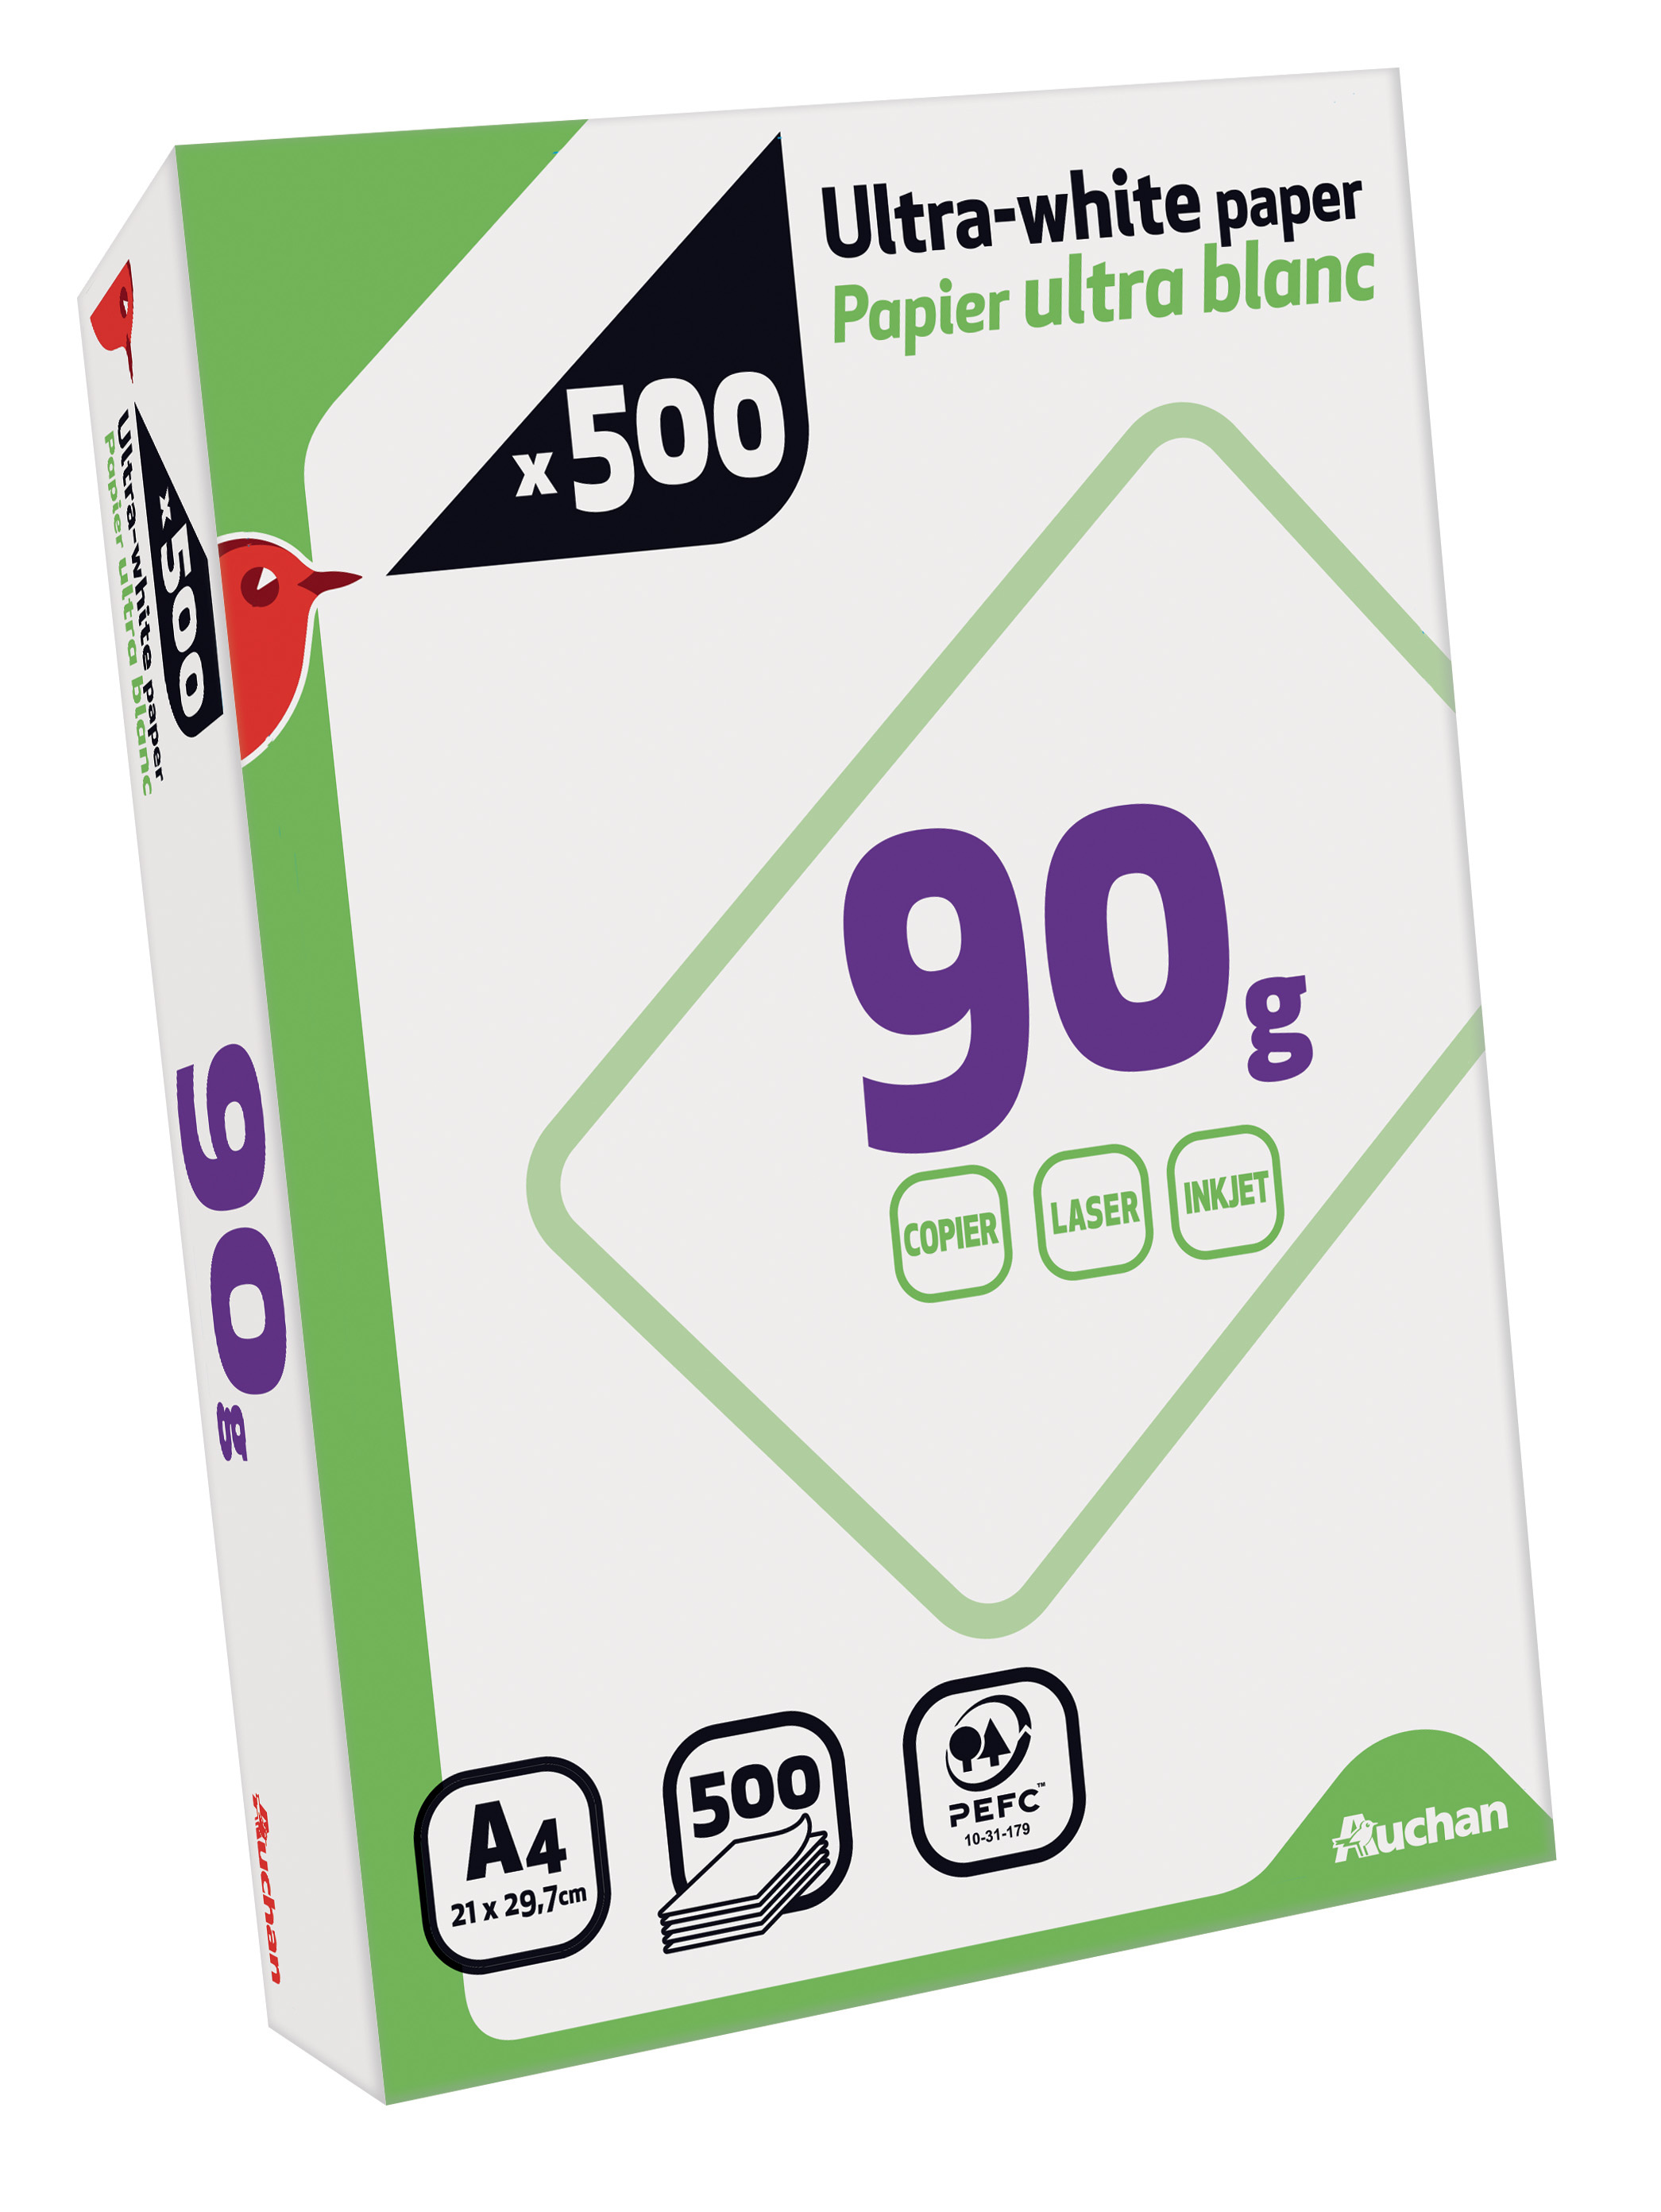 AUCHAN Ramette de papier ultra blanc 500 feuilles A4 – 90g pas cher 